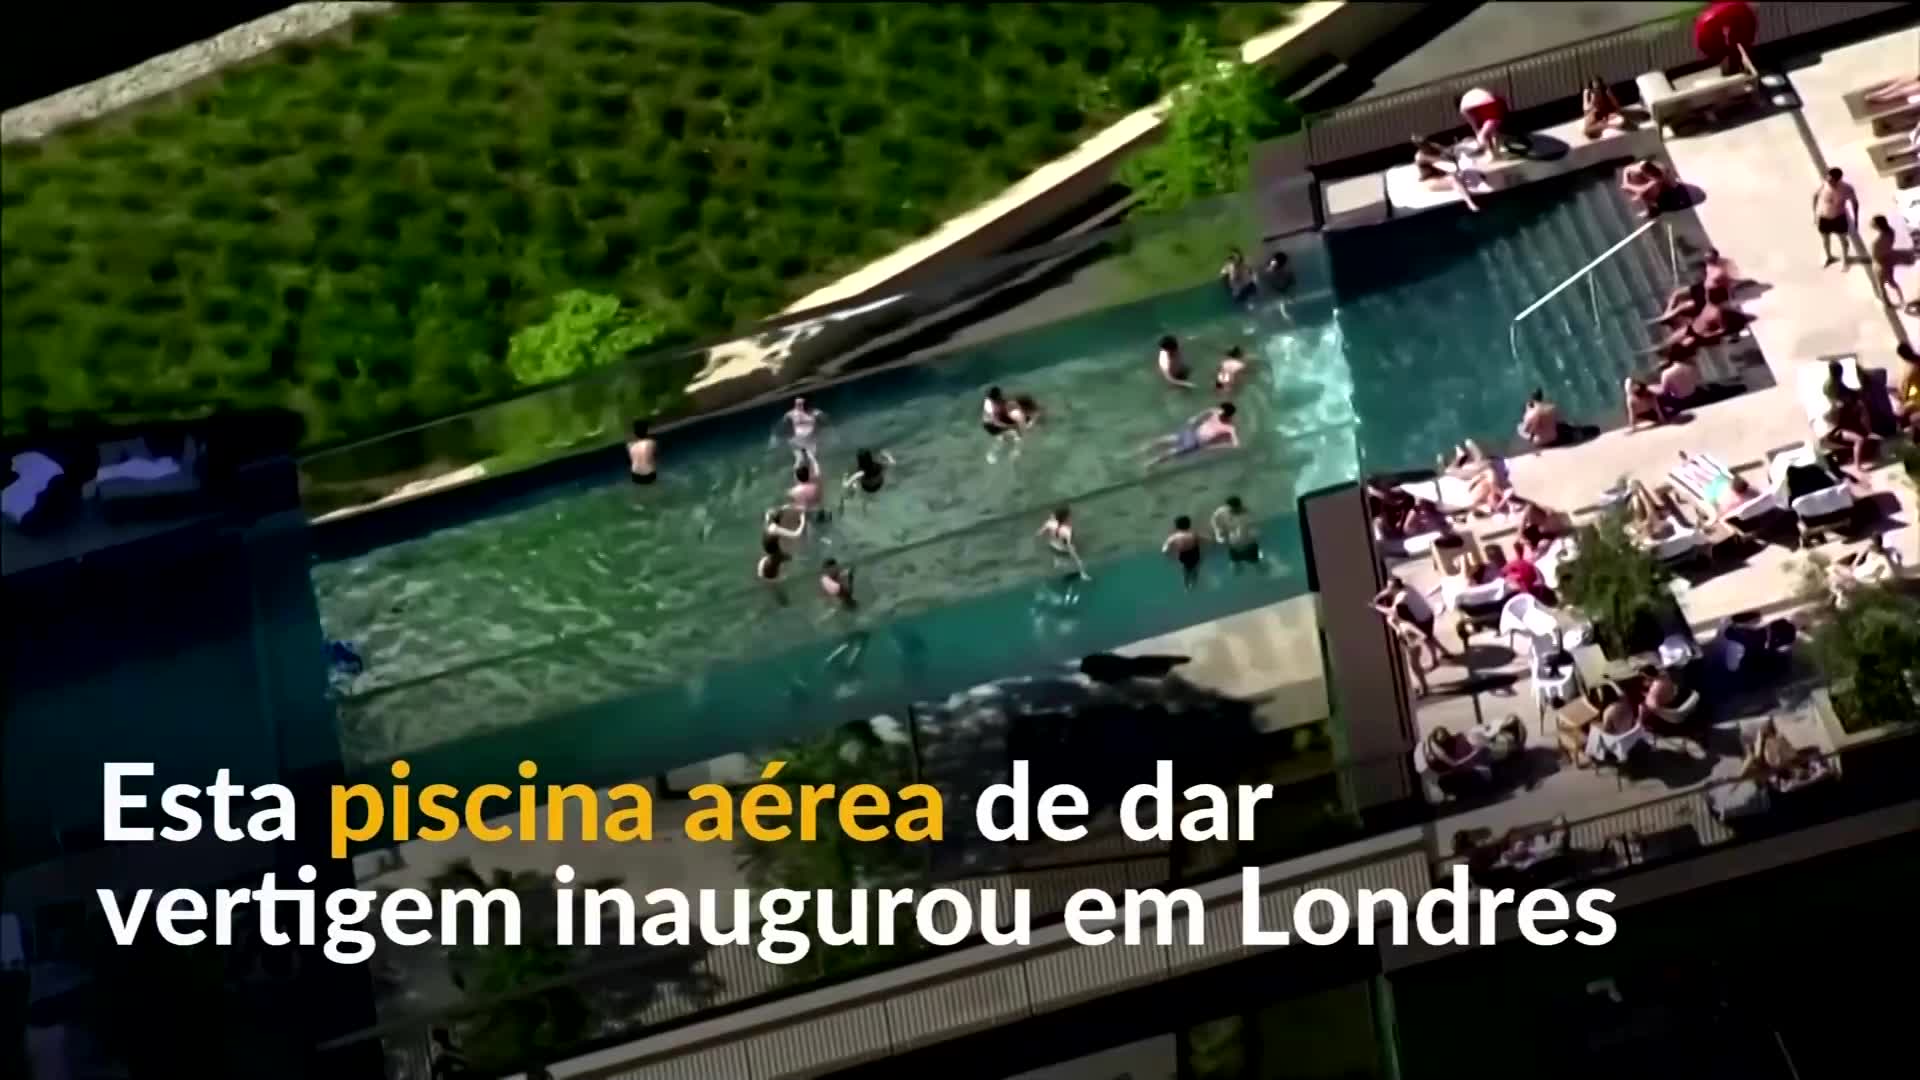 Vídeo: Piscina aérea com 30 metros de altura é inaugurada em Londres